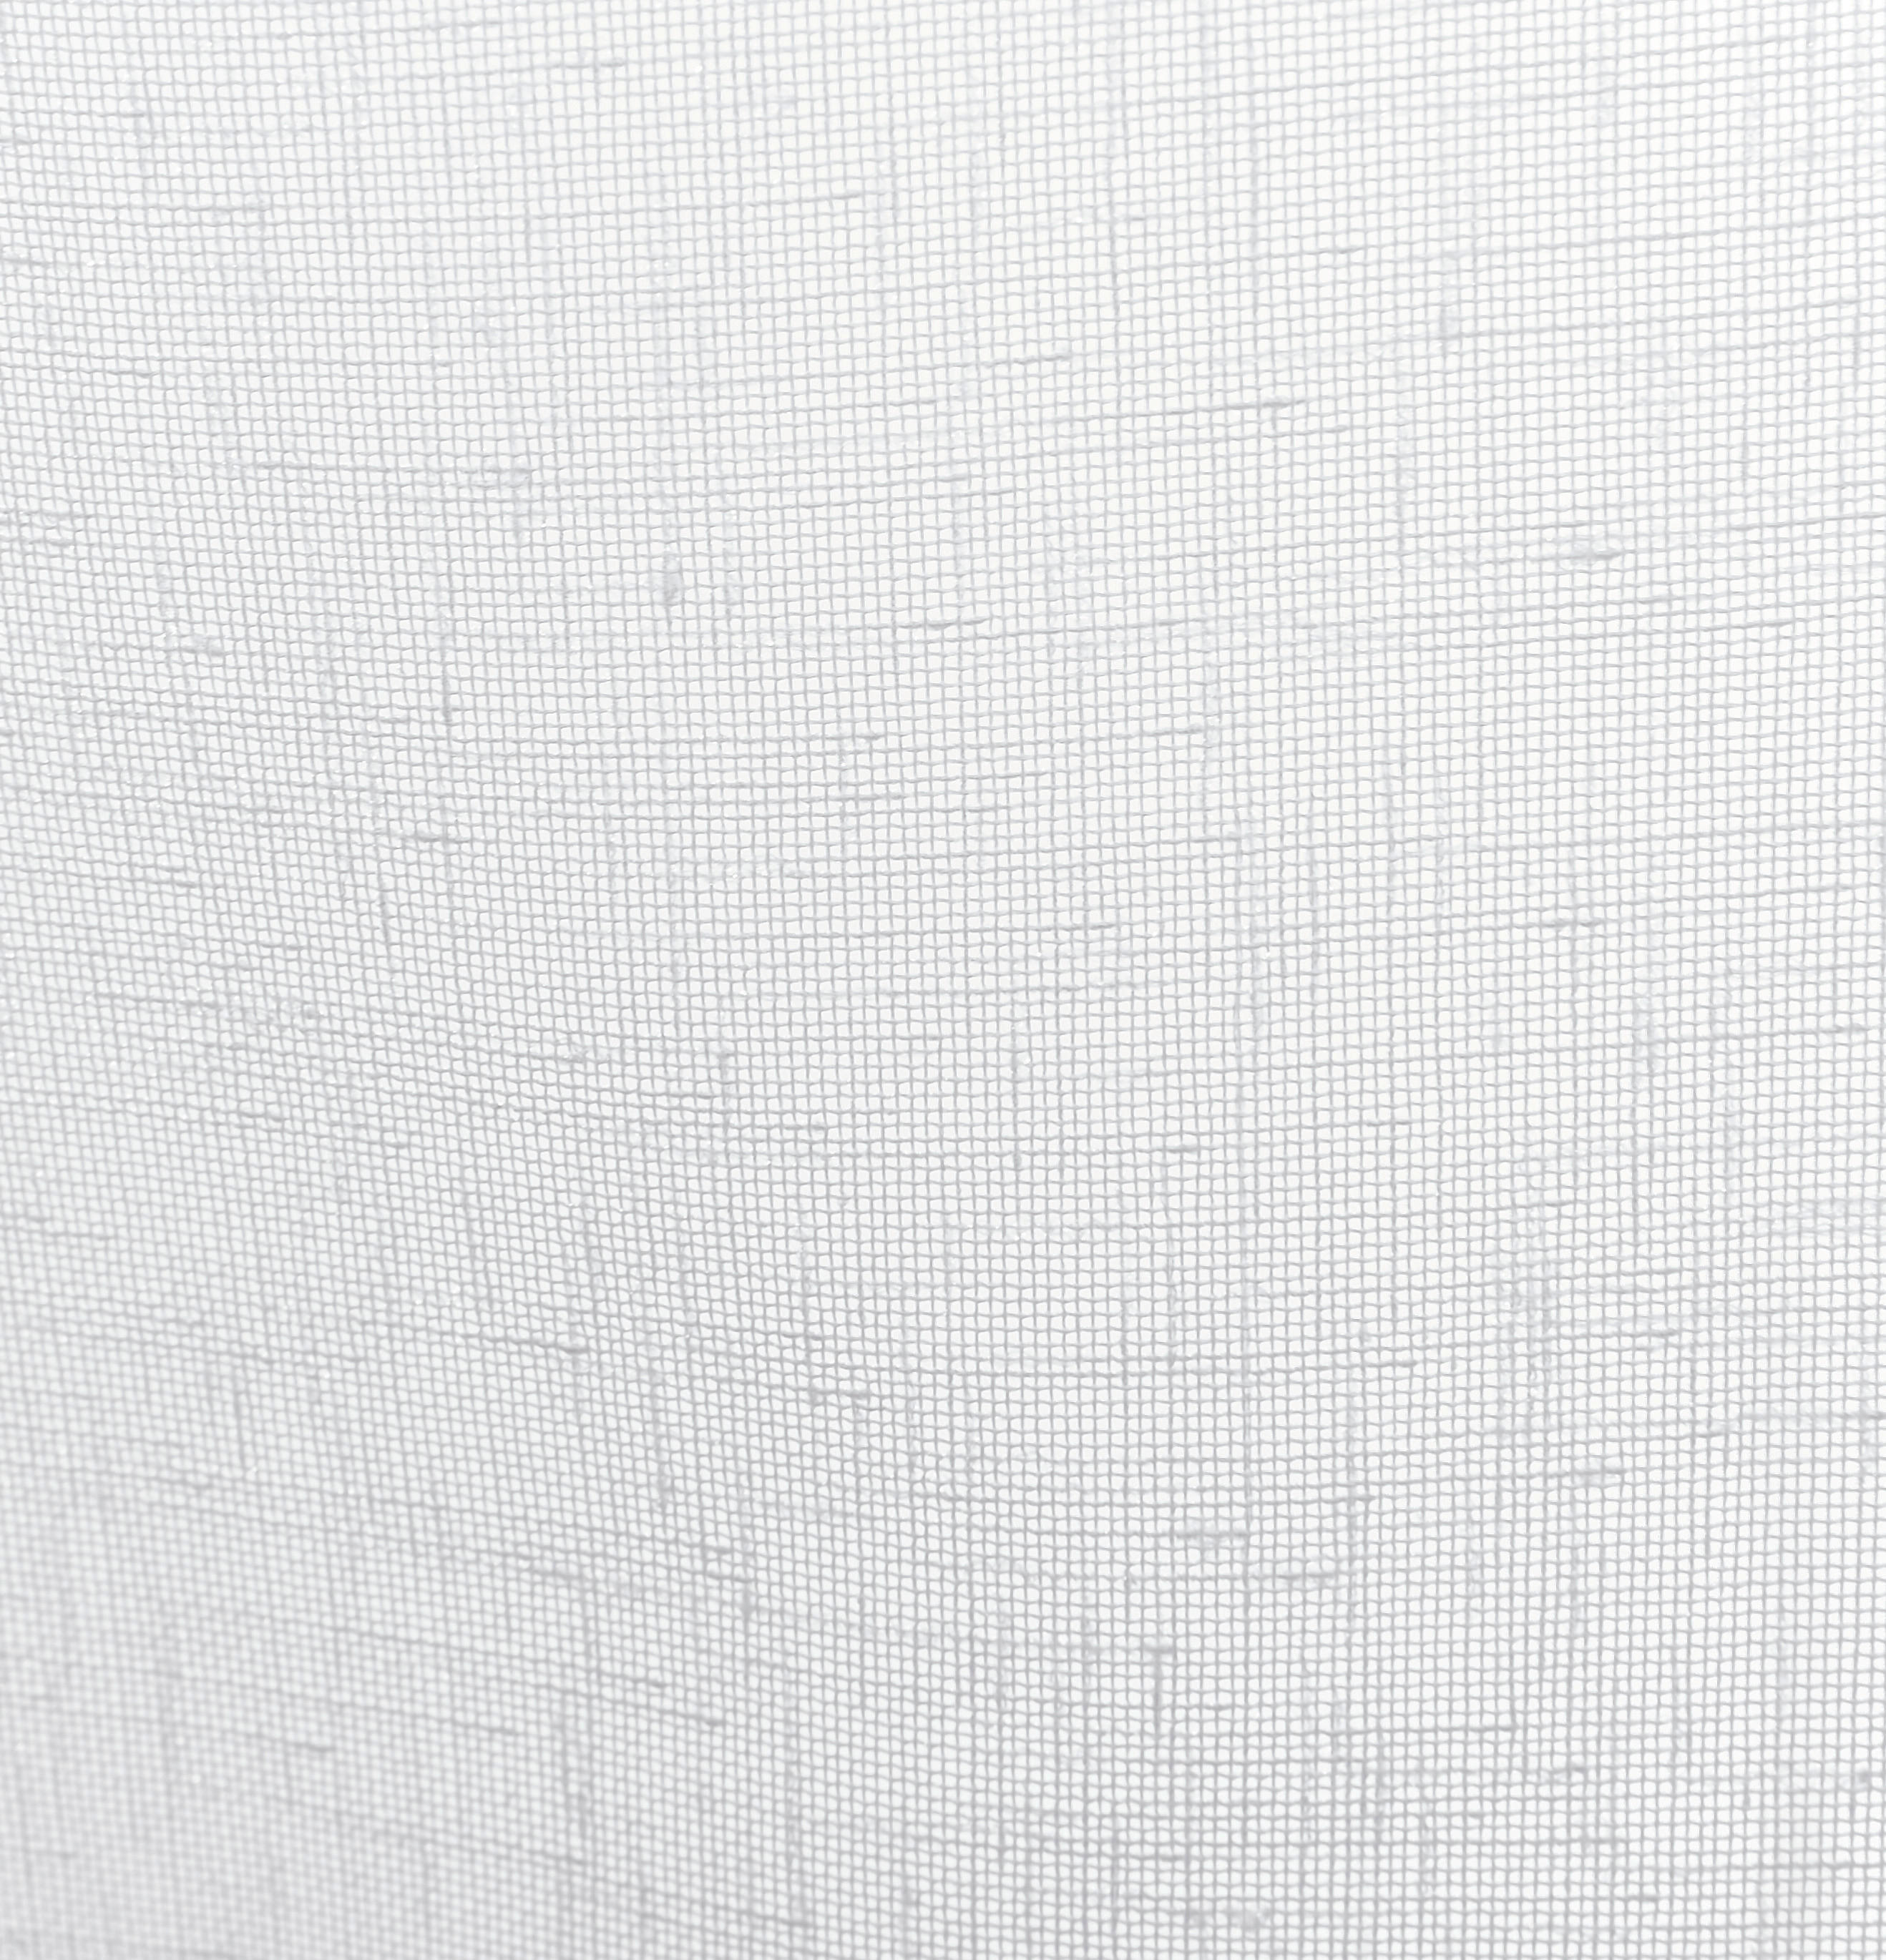 ZÁCLONA, priehľadné, 300 cm - biela, Basics, textil (300cm) - Esposa